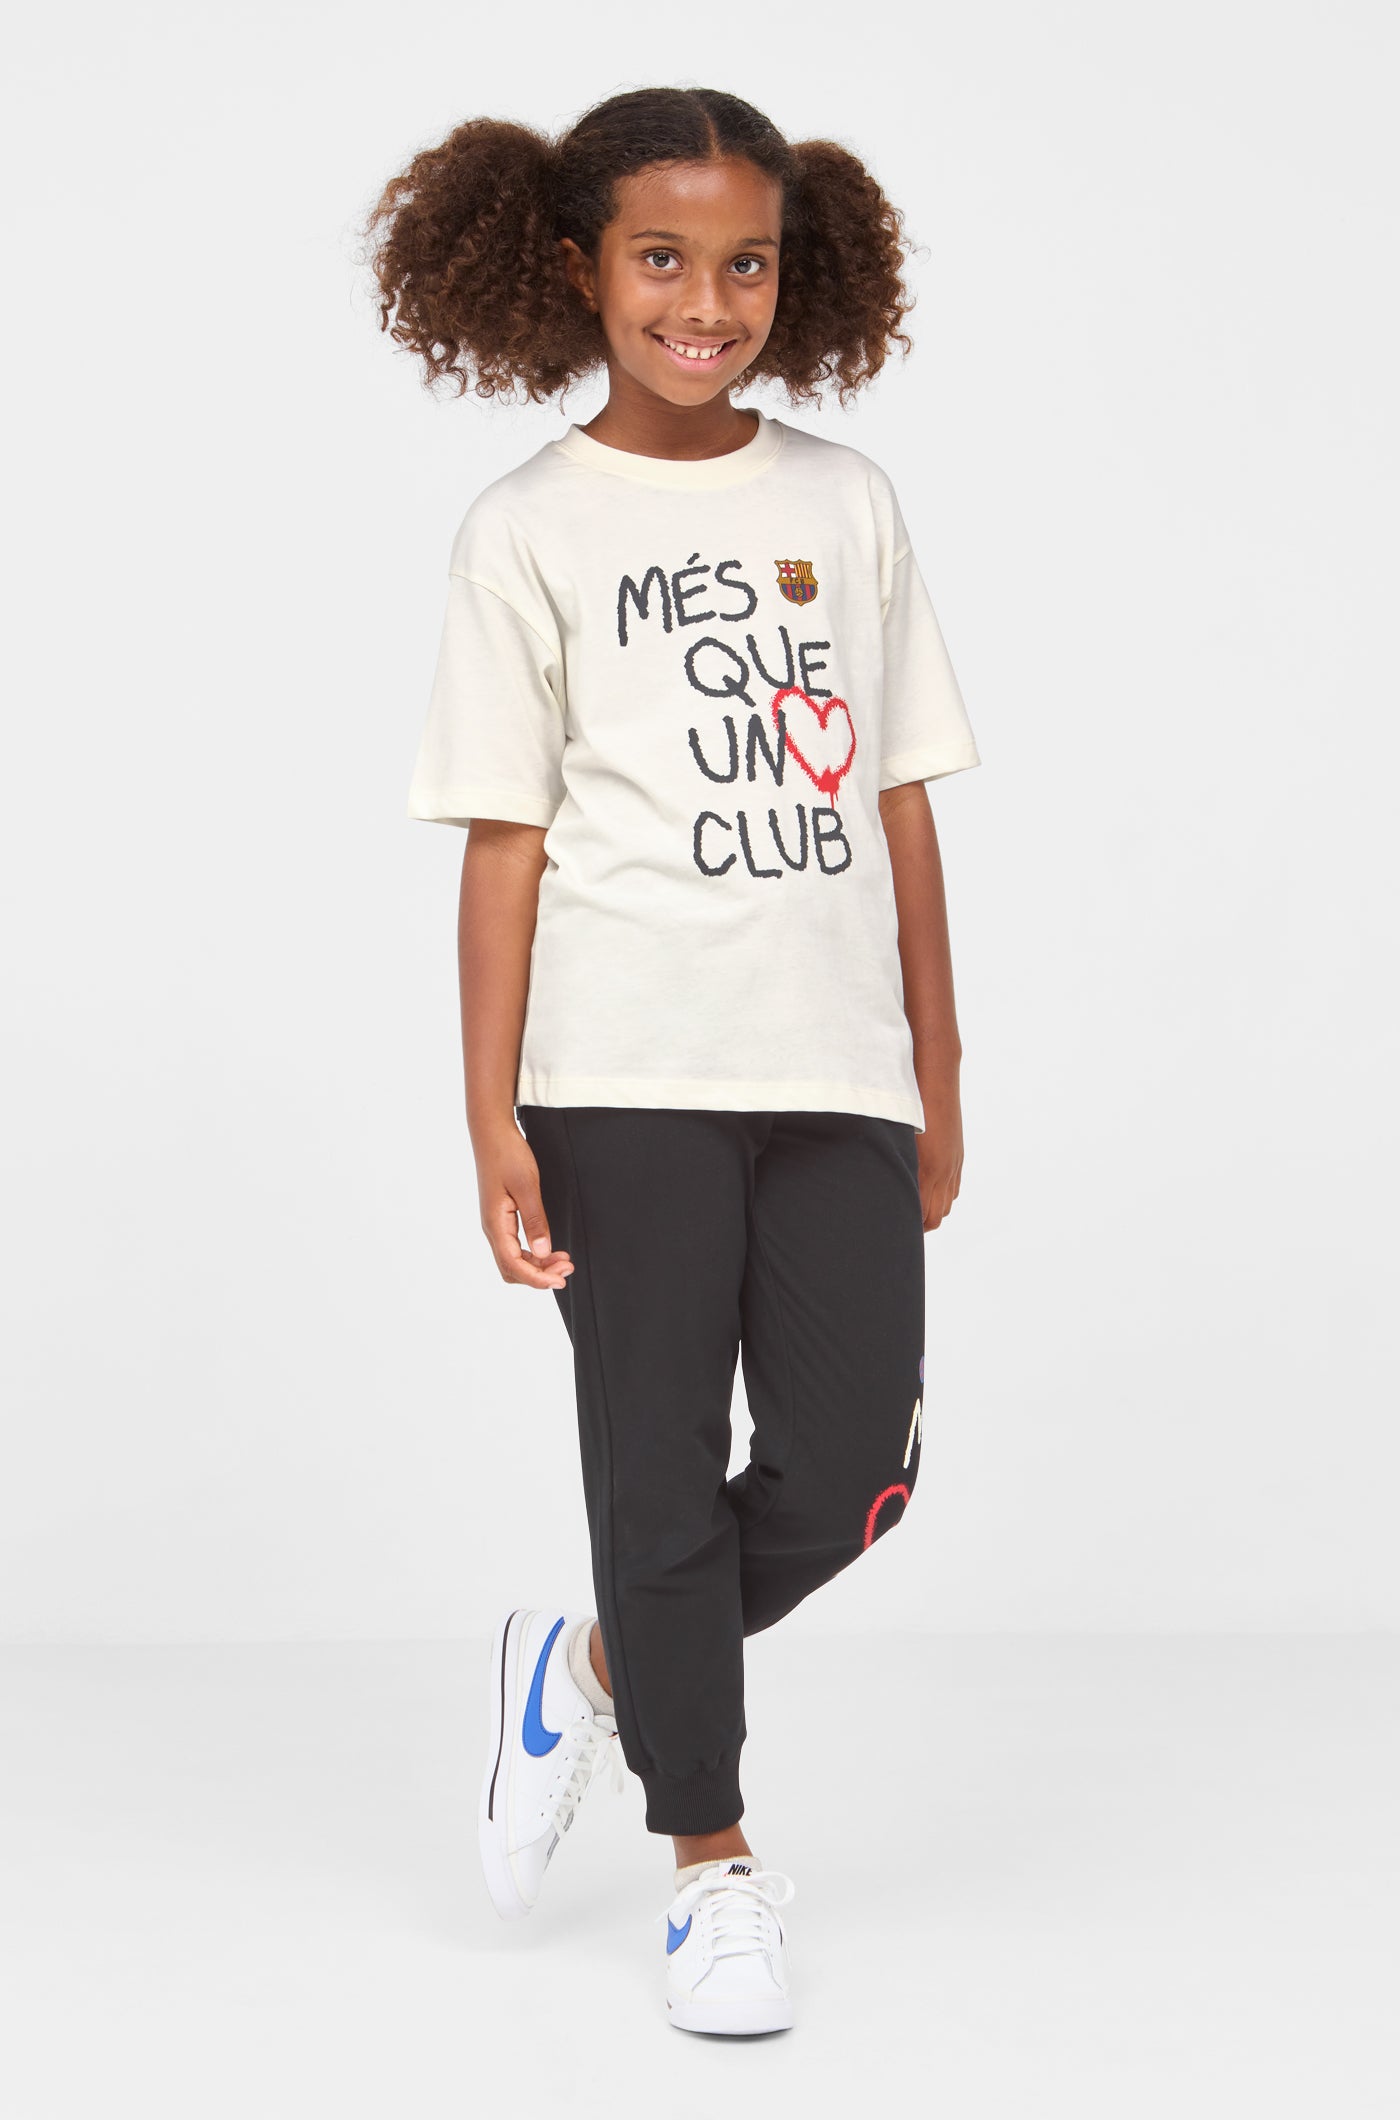 Camiseta “Més que un club” - Junior